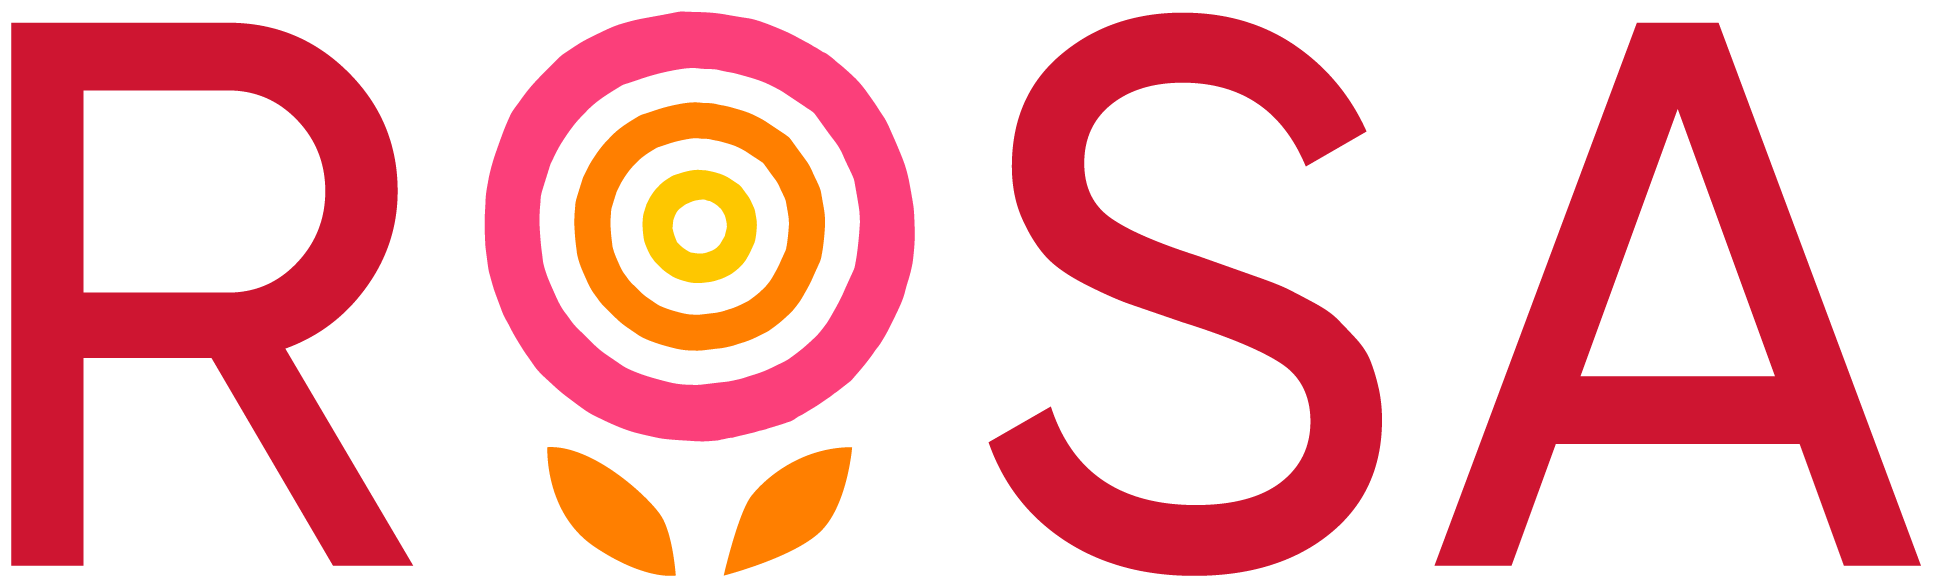 ROAS Foundation logo